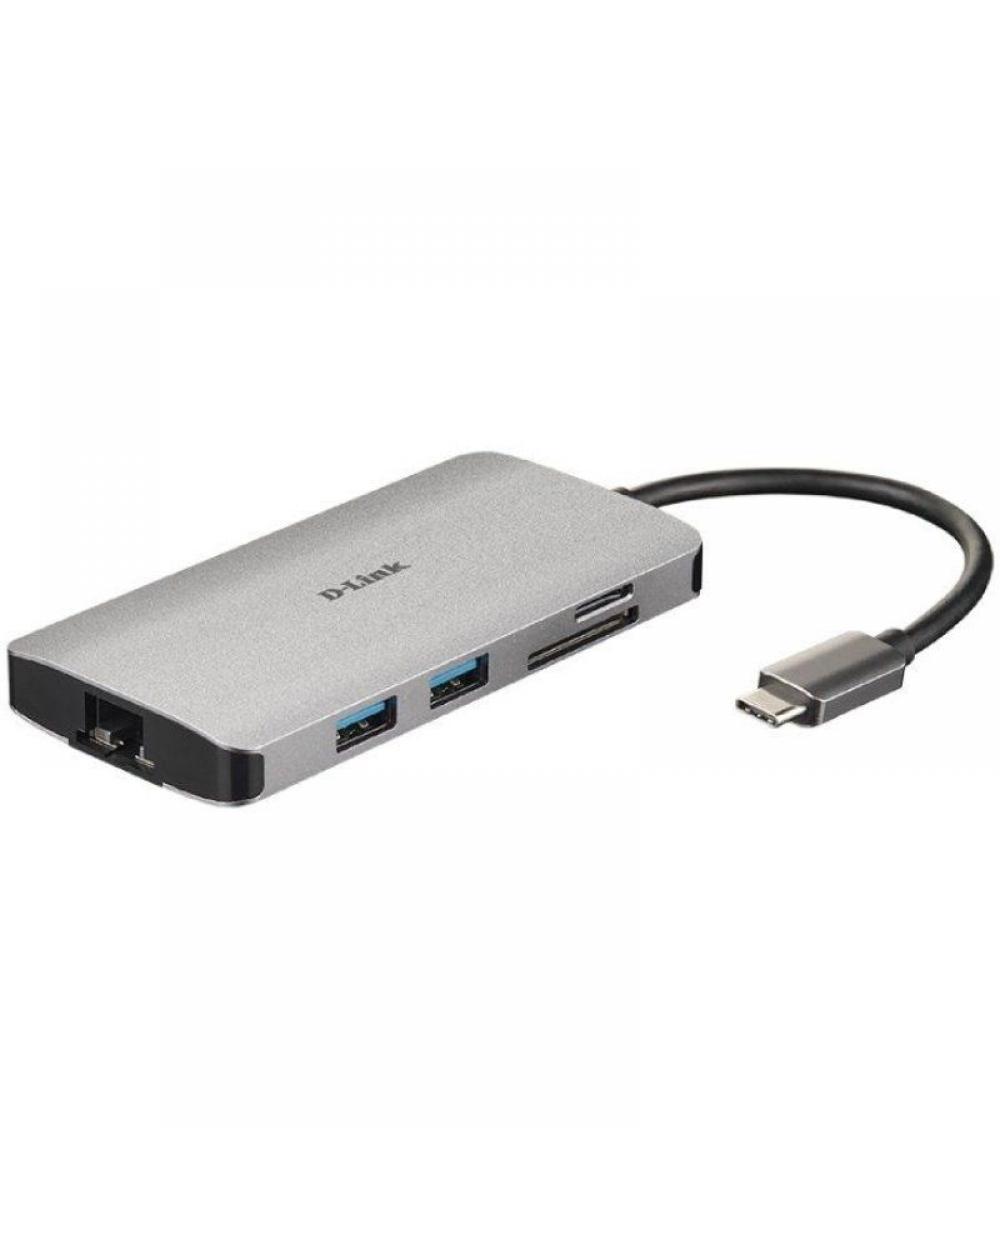 Hub USB Tipo-C D-Link DUB-M810/ 3 Puertos USB 3.0/ 1 Thunderbolt/ 1 HDMI/ 1 RJ45/ Gris - Imagen 1